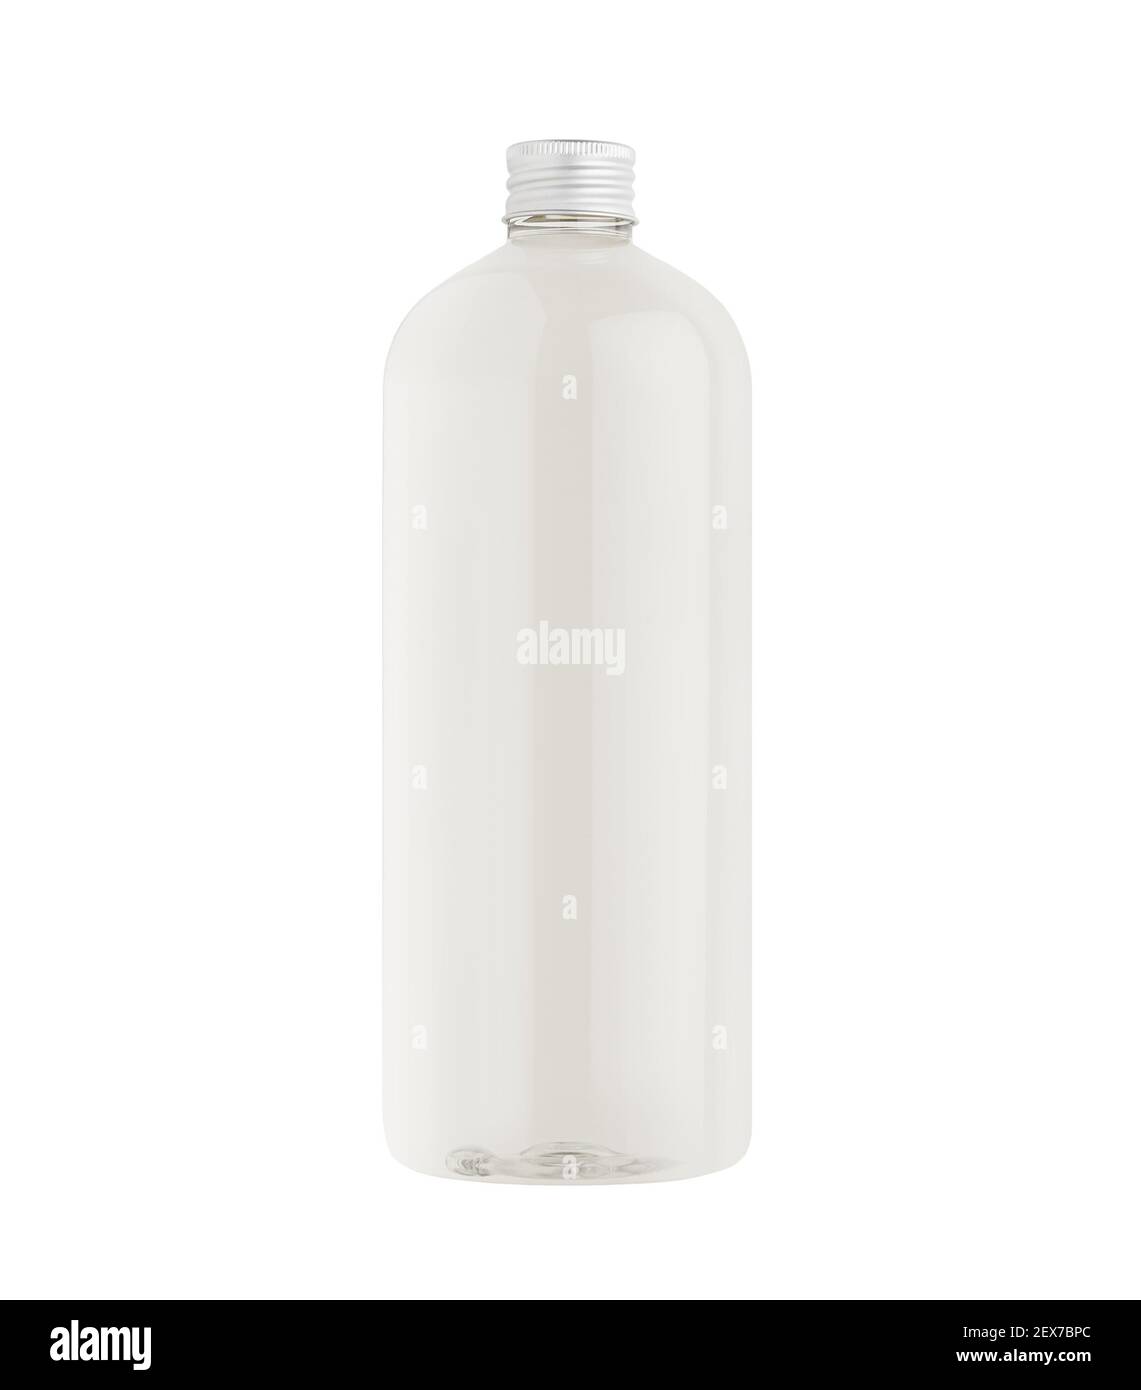 Grande bouteille en plastique transparent avec eau, maquette de bouchon argenté, isolée. Modèle pour portefeuille, conception, identité de marque. Banque D'Images